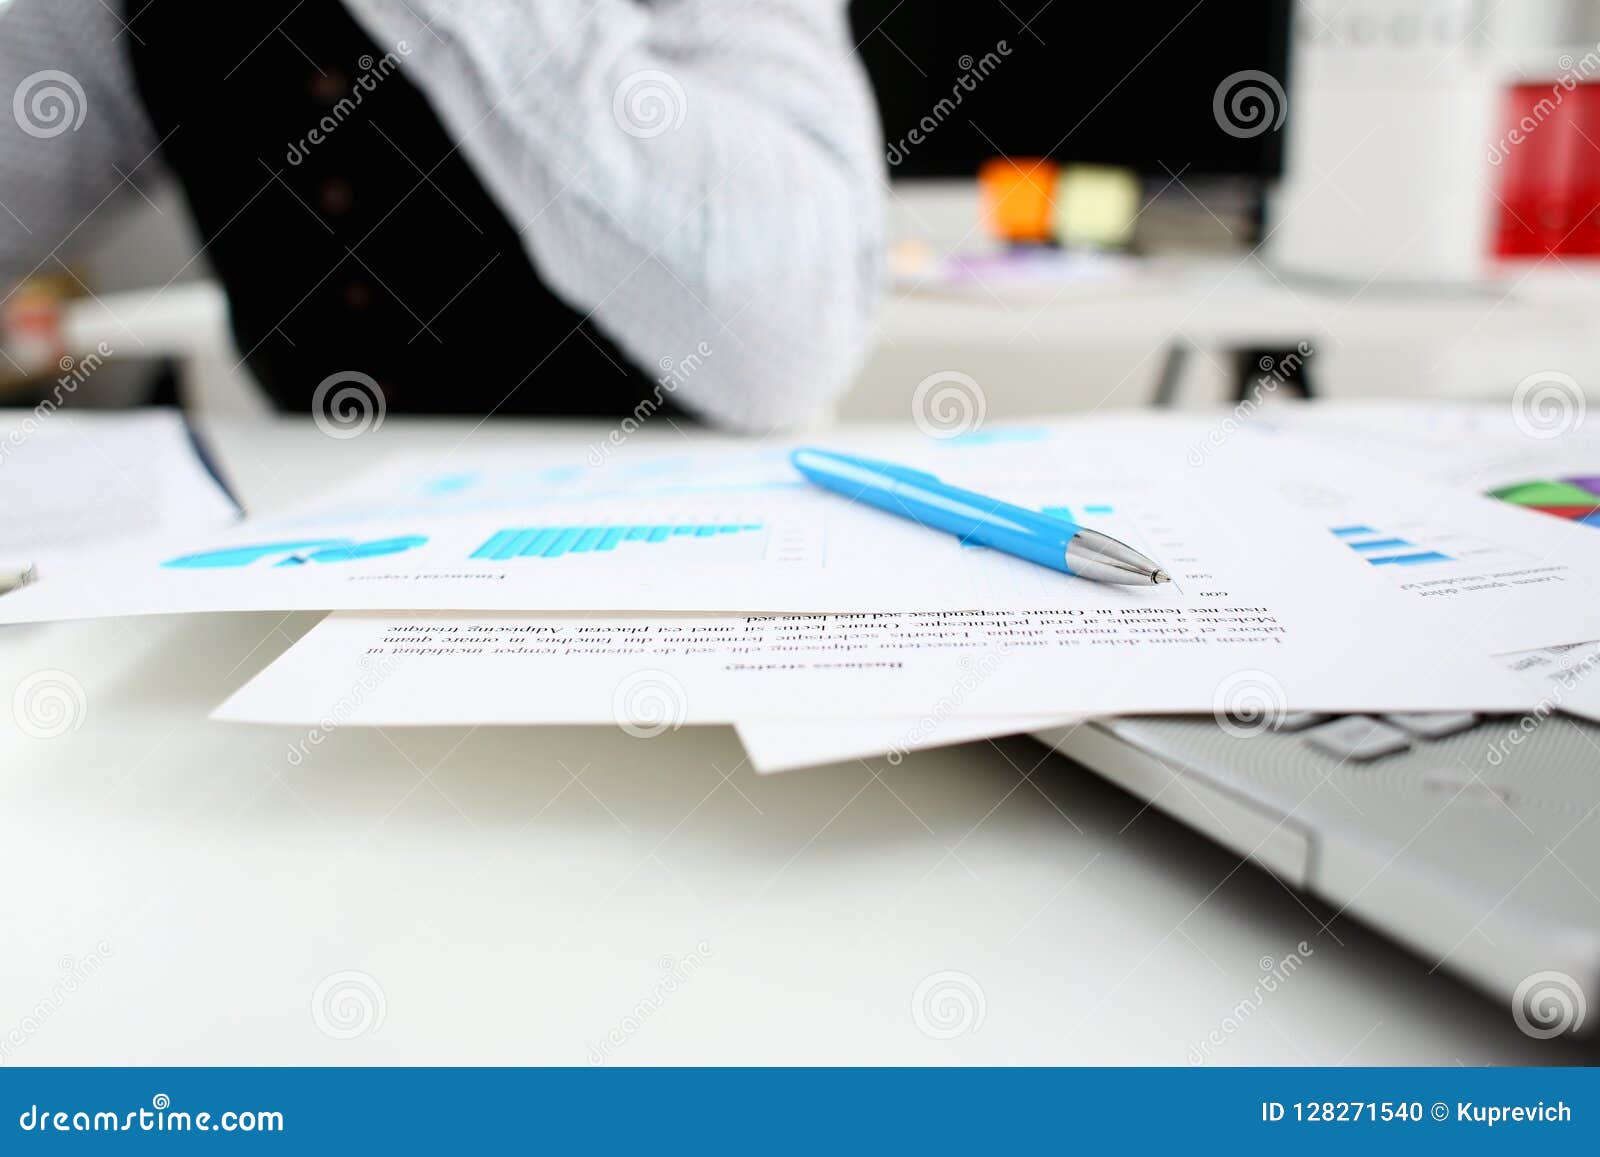 Важный как бумажный. Руки с бумагами за столом цветные рисунки. Документы работы банка на столе.